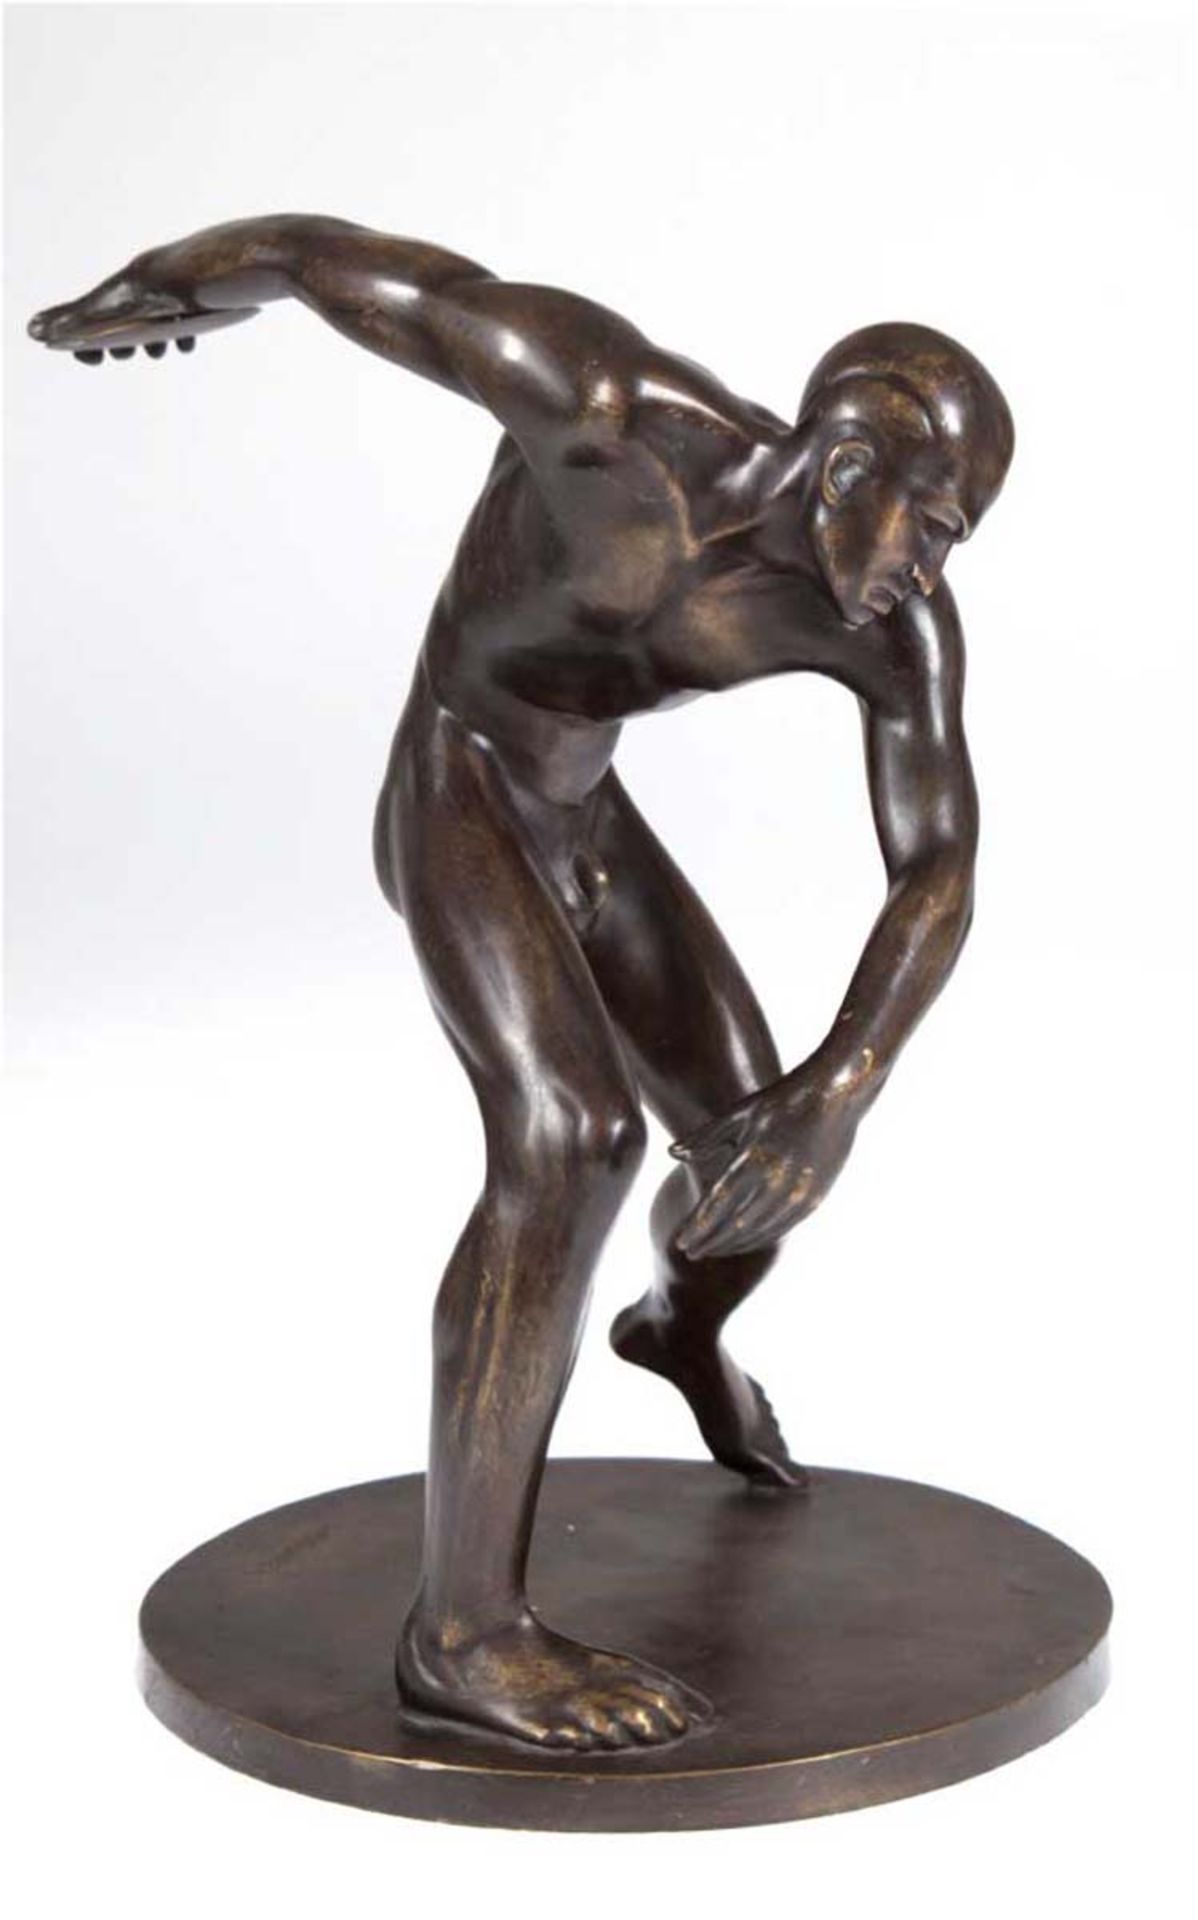 Schaper, Wolfgang (1895-1930) "Diskuswerfer", um 1920, Bronze, braun patiniert, auf demSockel